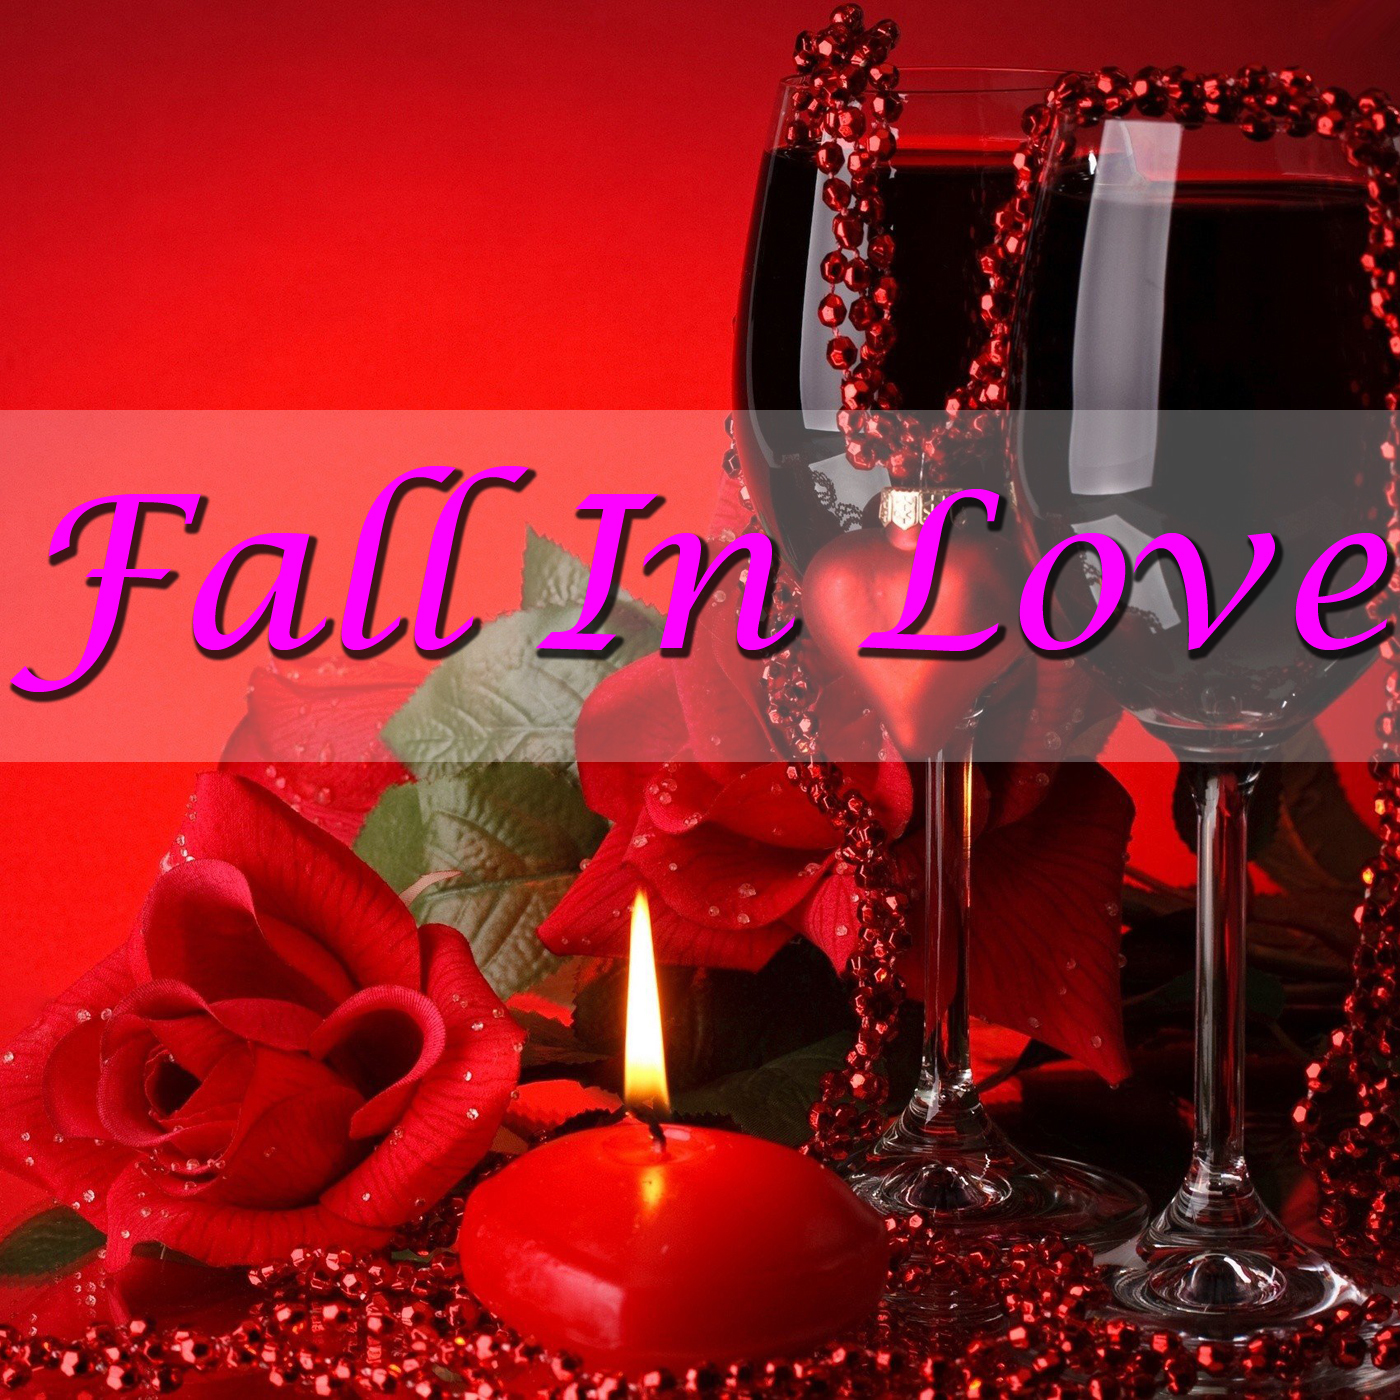 Fall In Love!